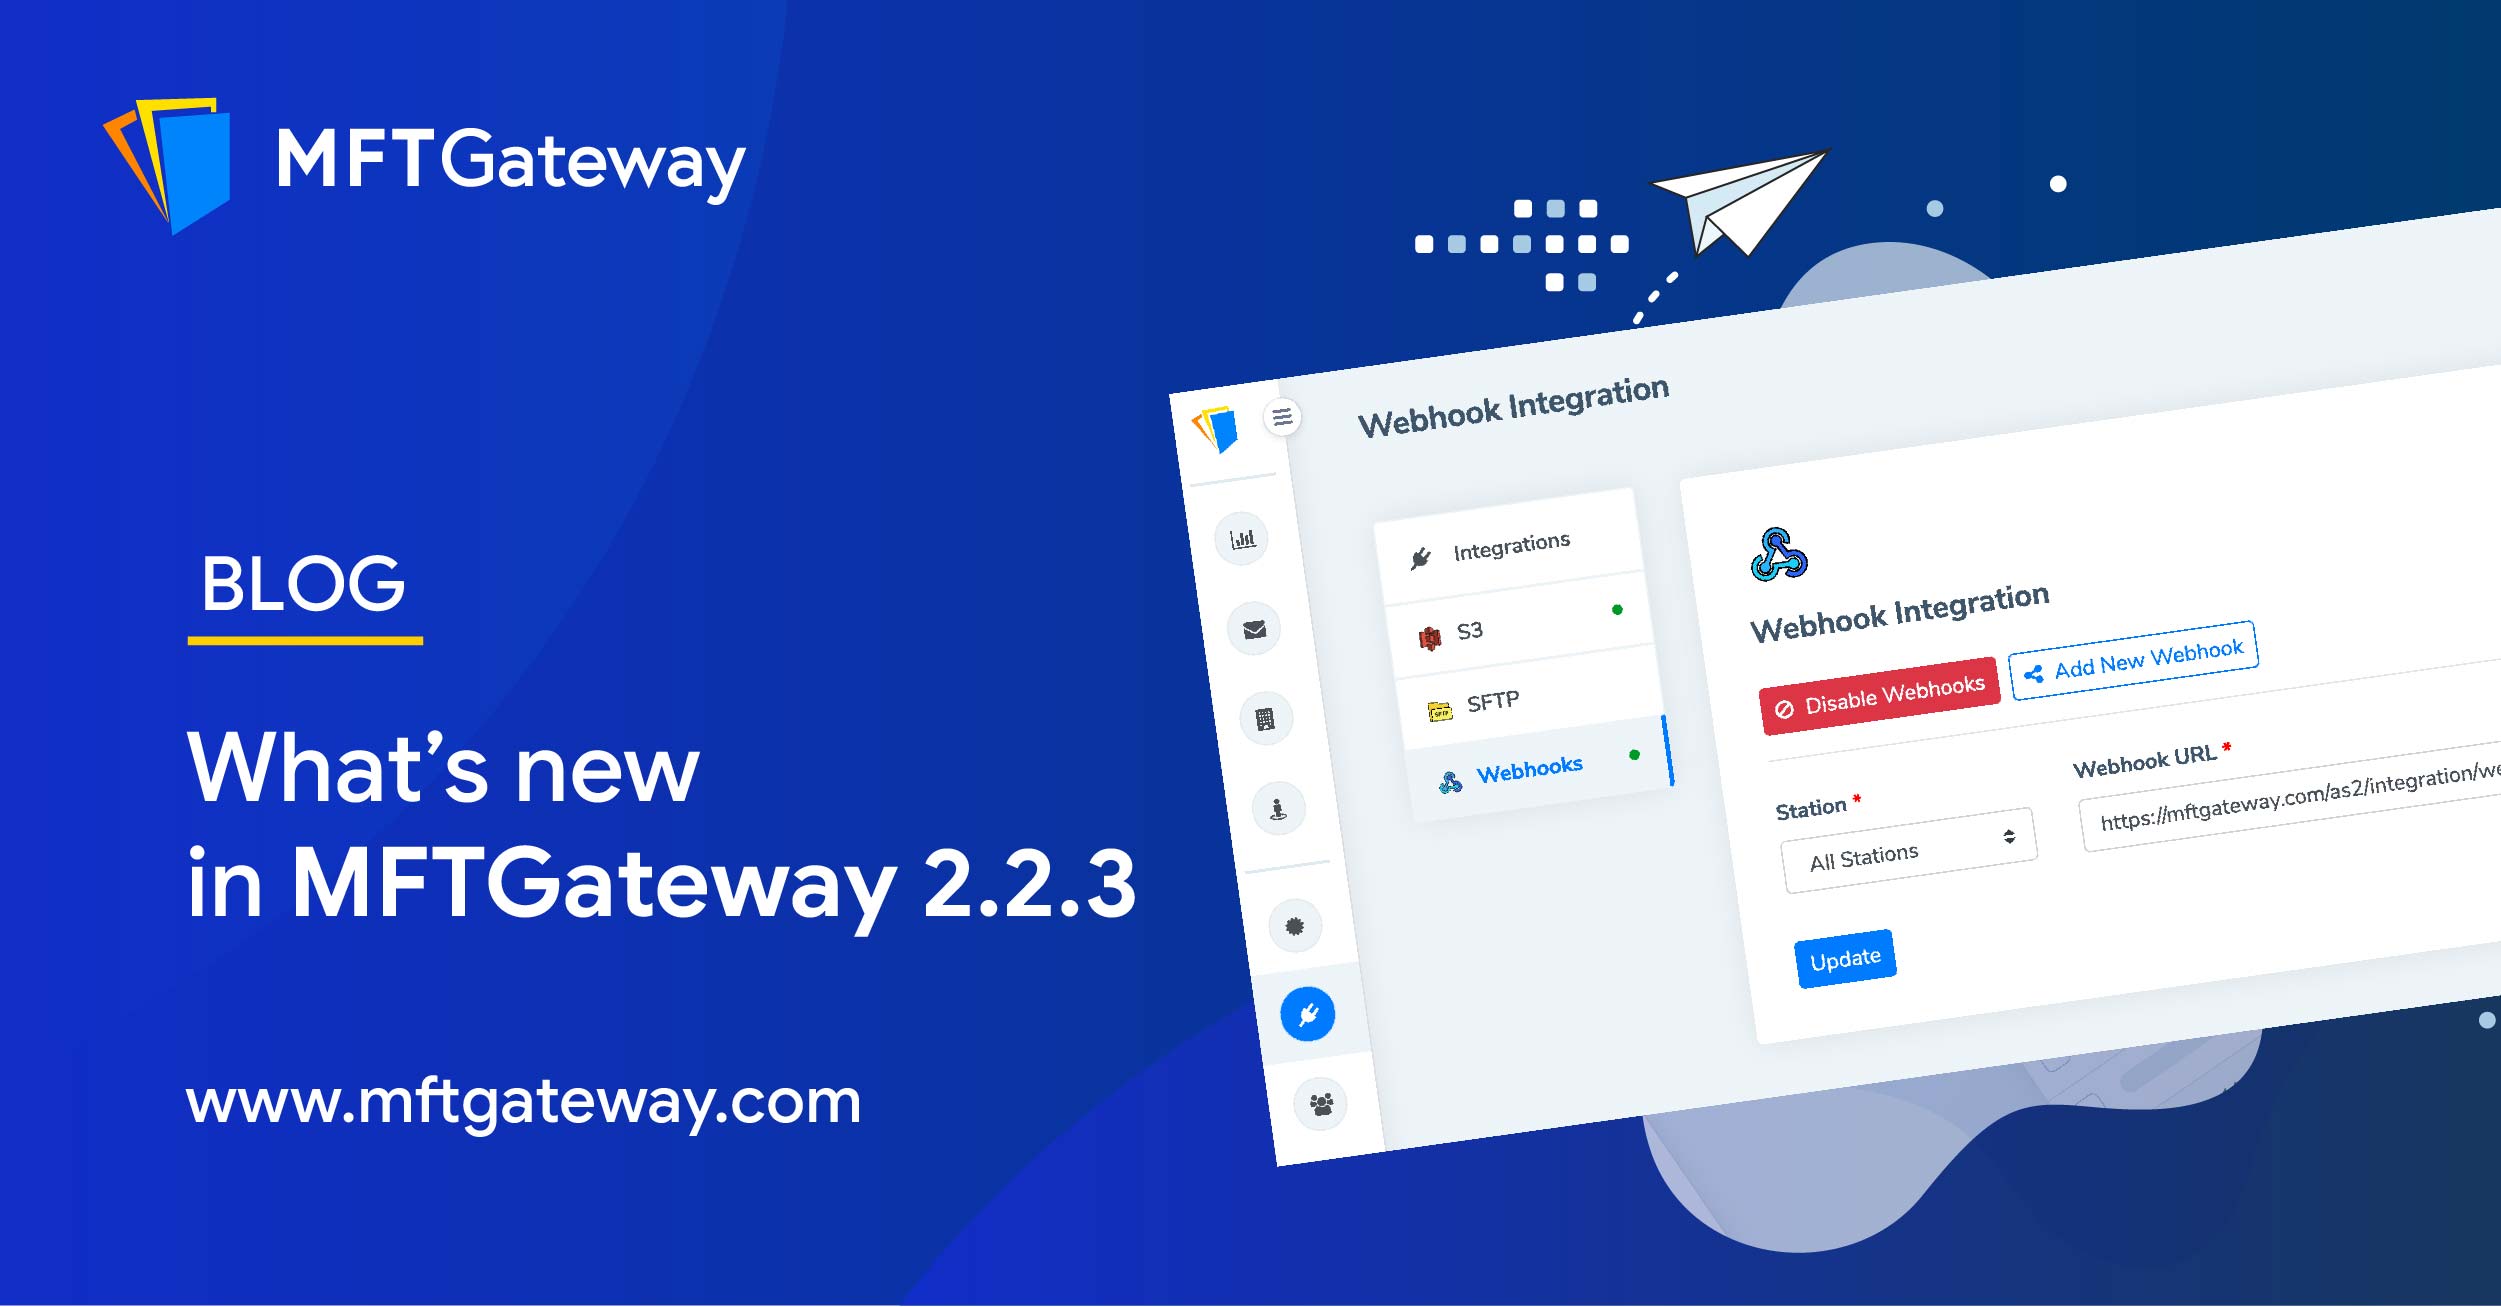 MFT Gateway 2.2.3 New Release | Webhook Messages Send Failure Notifications